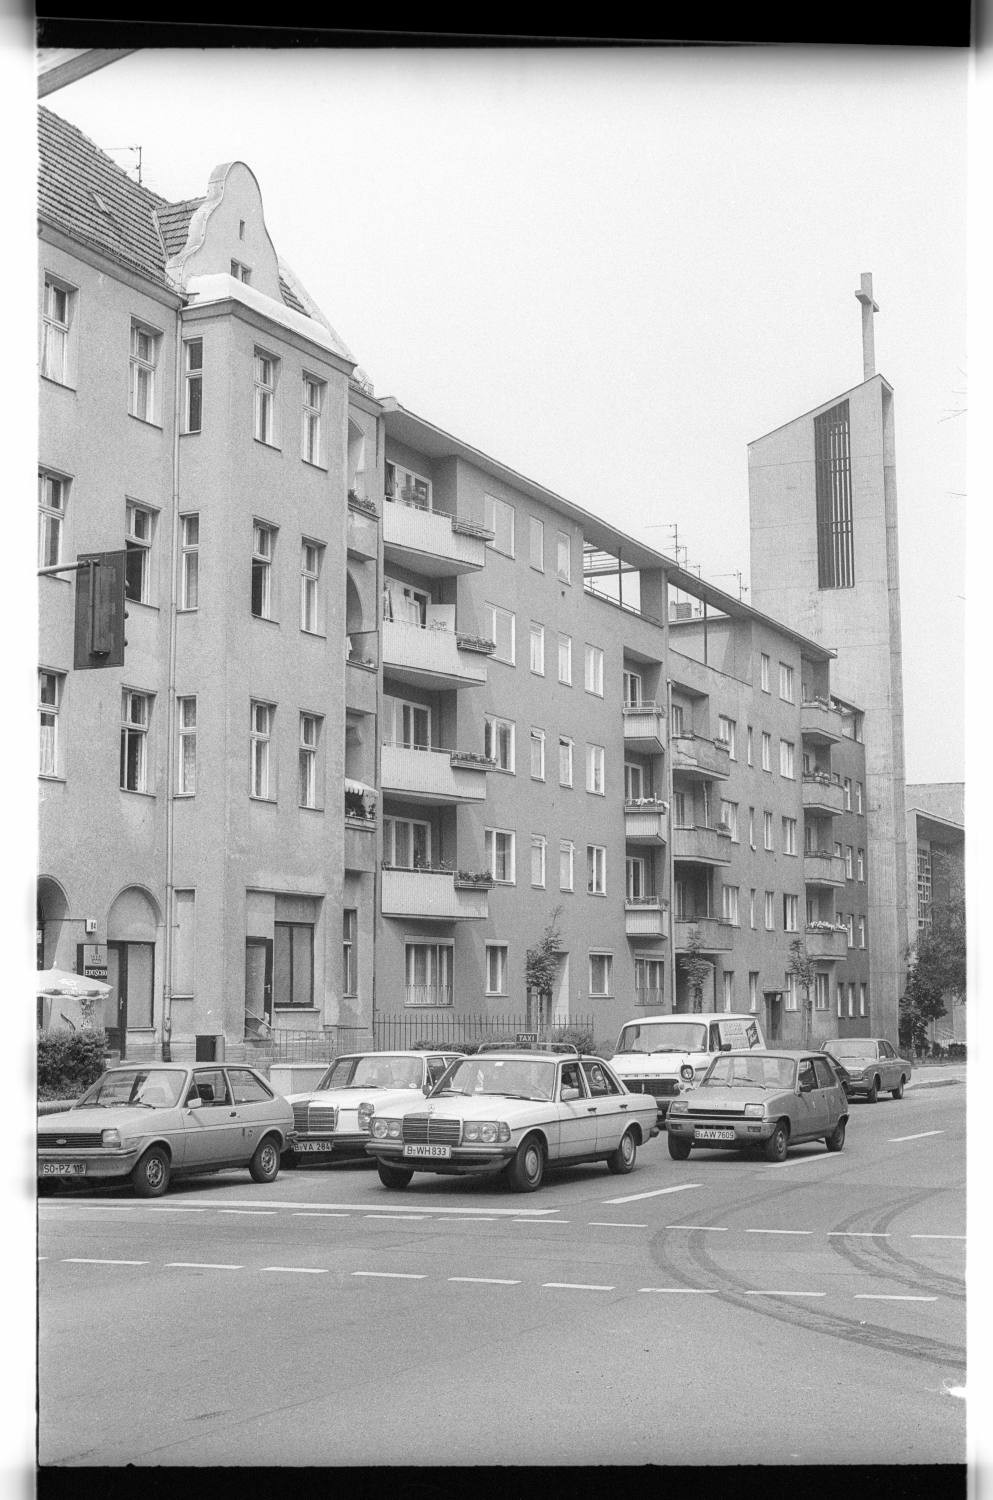 Kleinbildnegative: Rubensstraße, Grazer Platz, 1979 (Museen Tempelhof-Schöneberg/Jürgen Henschel RR-F)